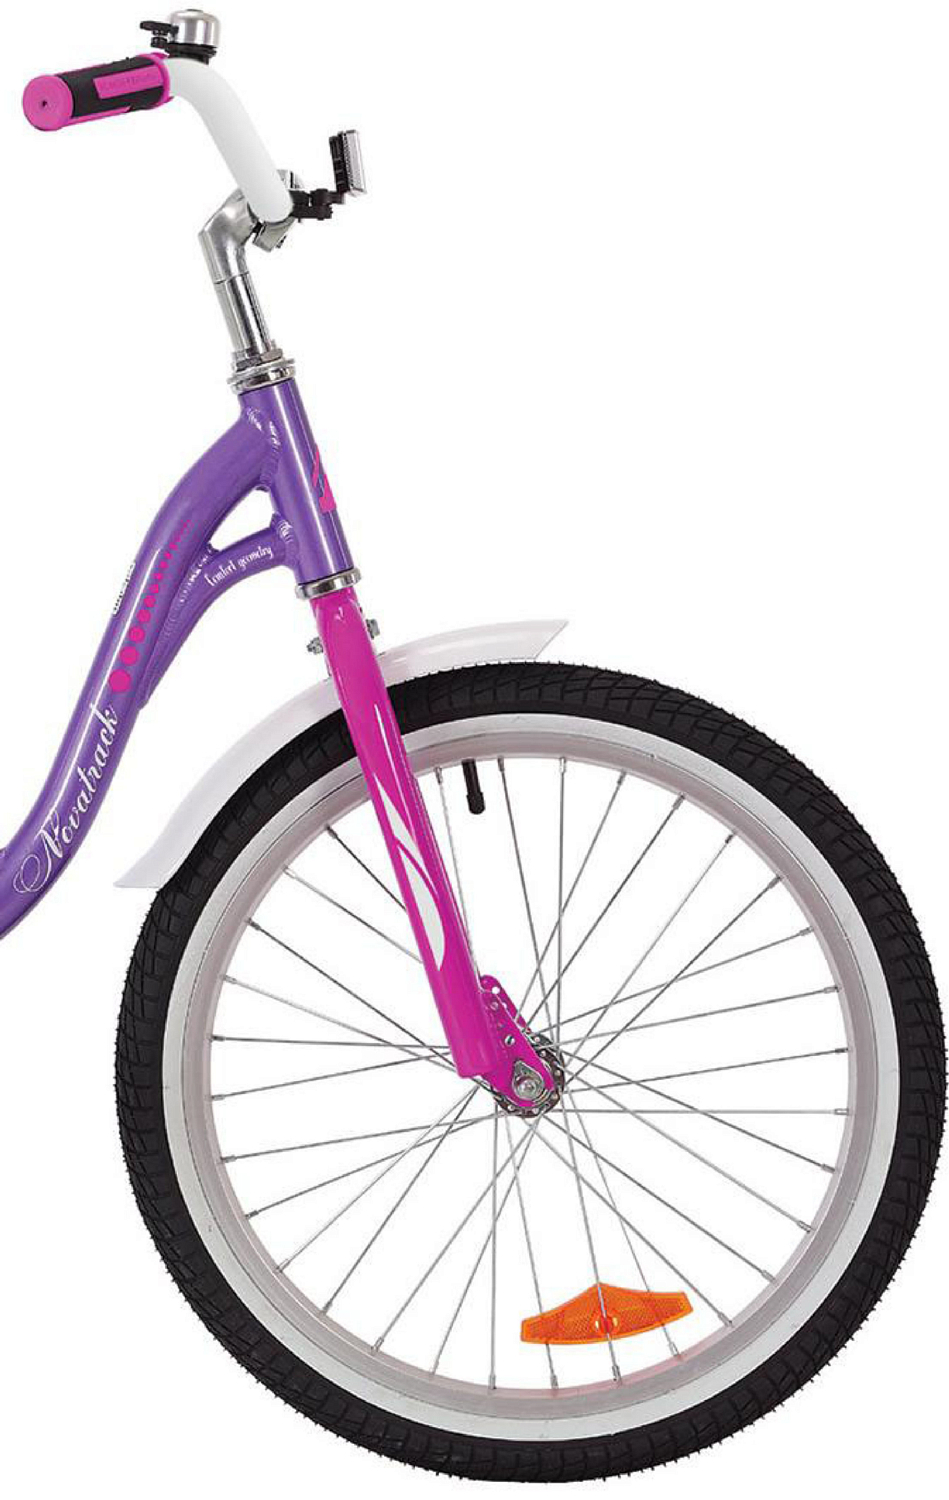 Велосипед Novatrack Angel 20 2019 фиолетовый